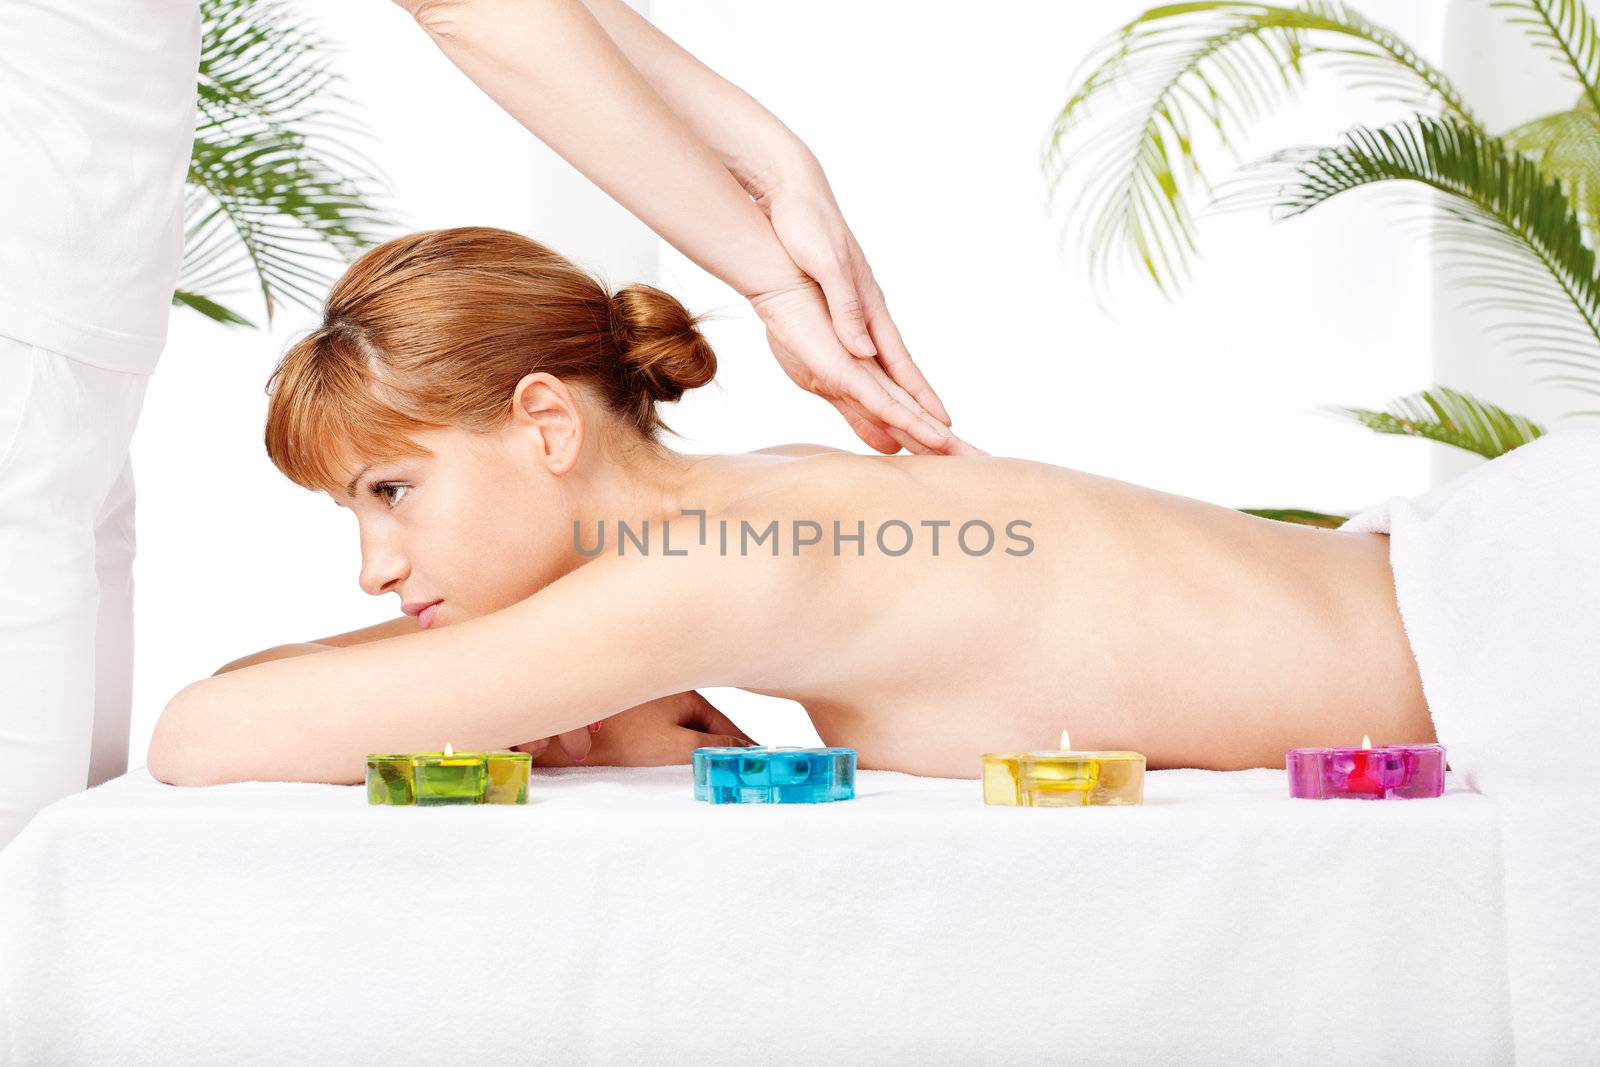 Pretty woman getting a back massage in spa salon